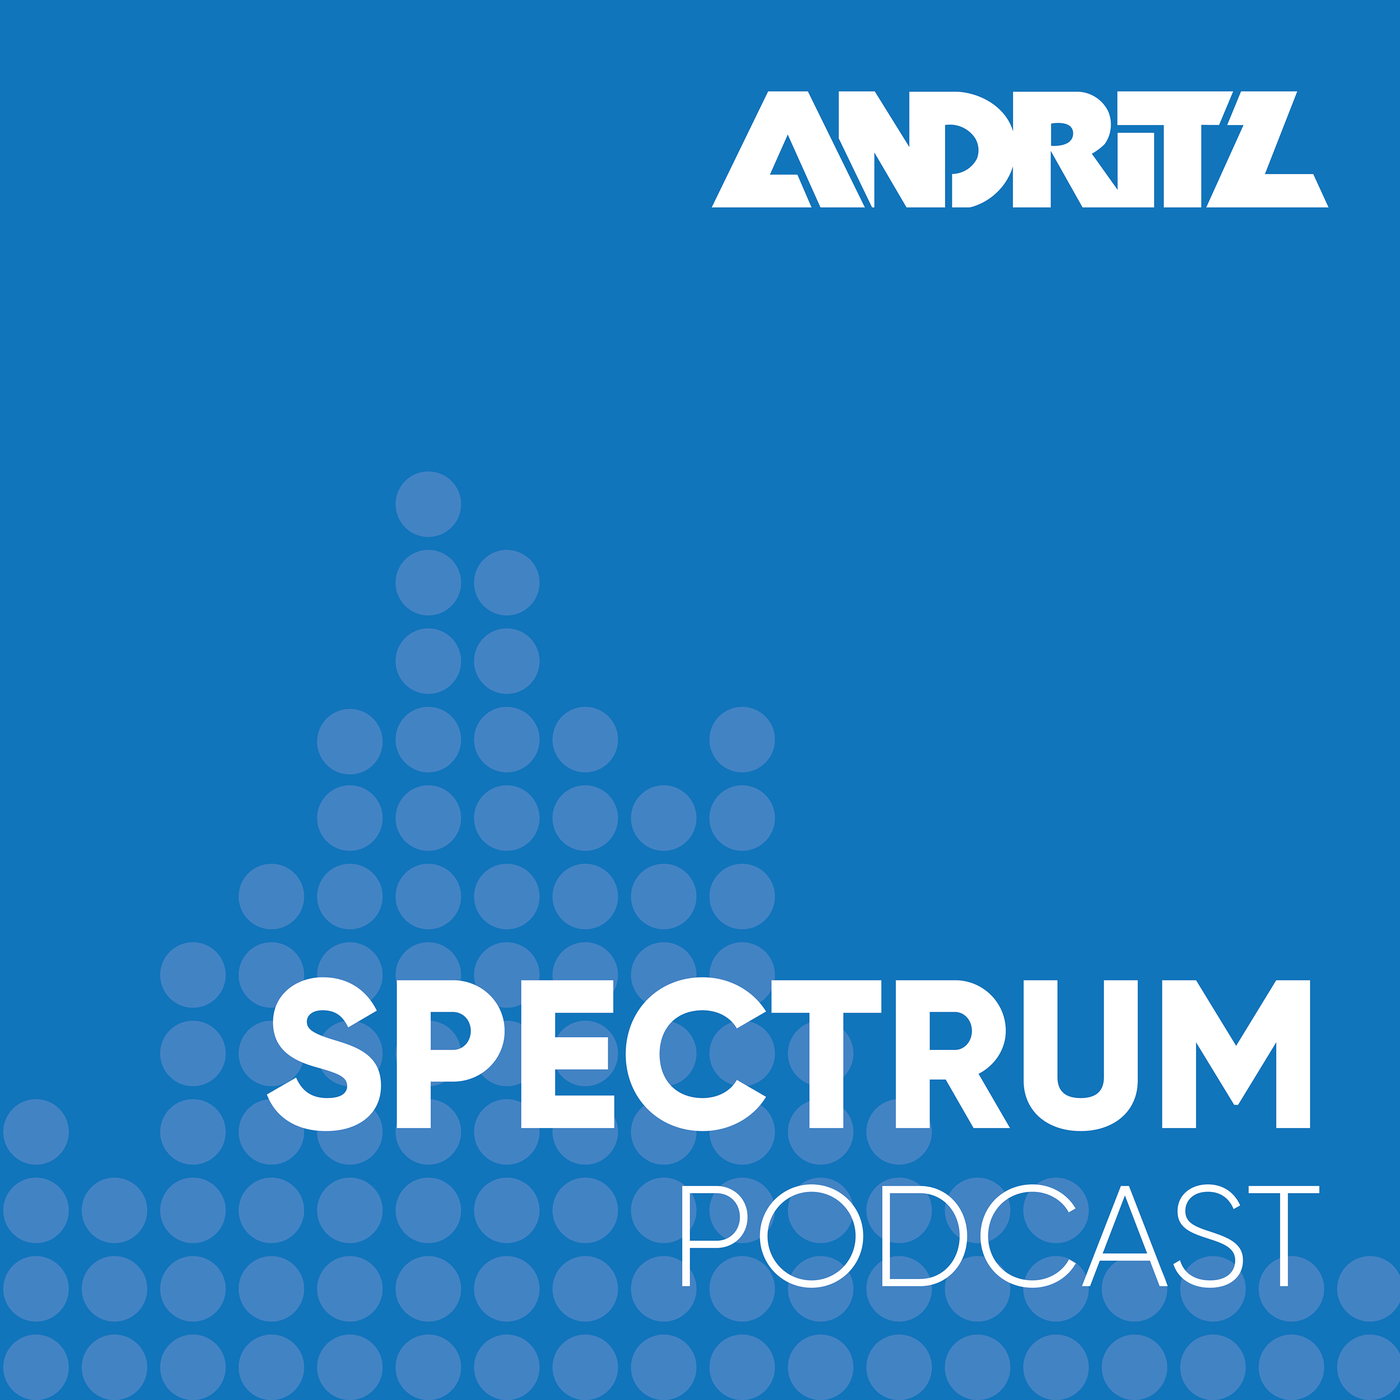 ANDRITZ SPECTRUM Podcast